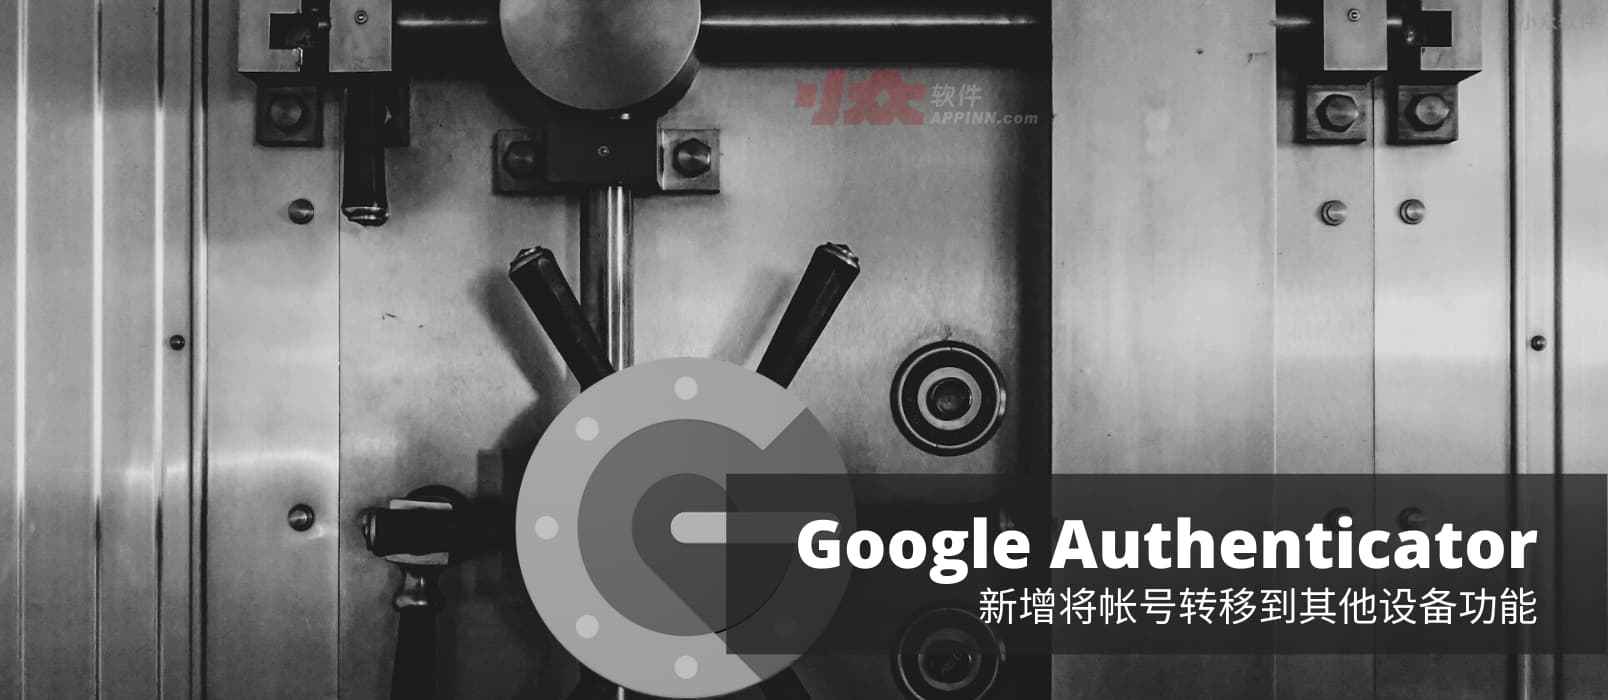 二次验证应用 Google Authenticator 支持转移帐号（验证码）功能，换机不再是噩梦[Android]